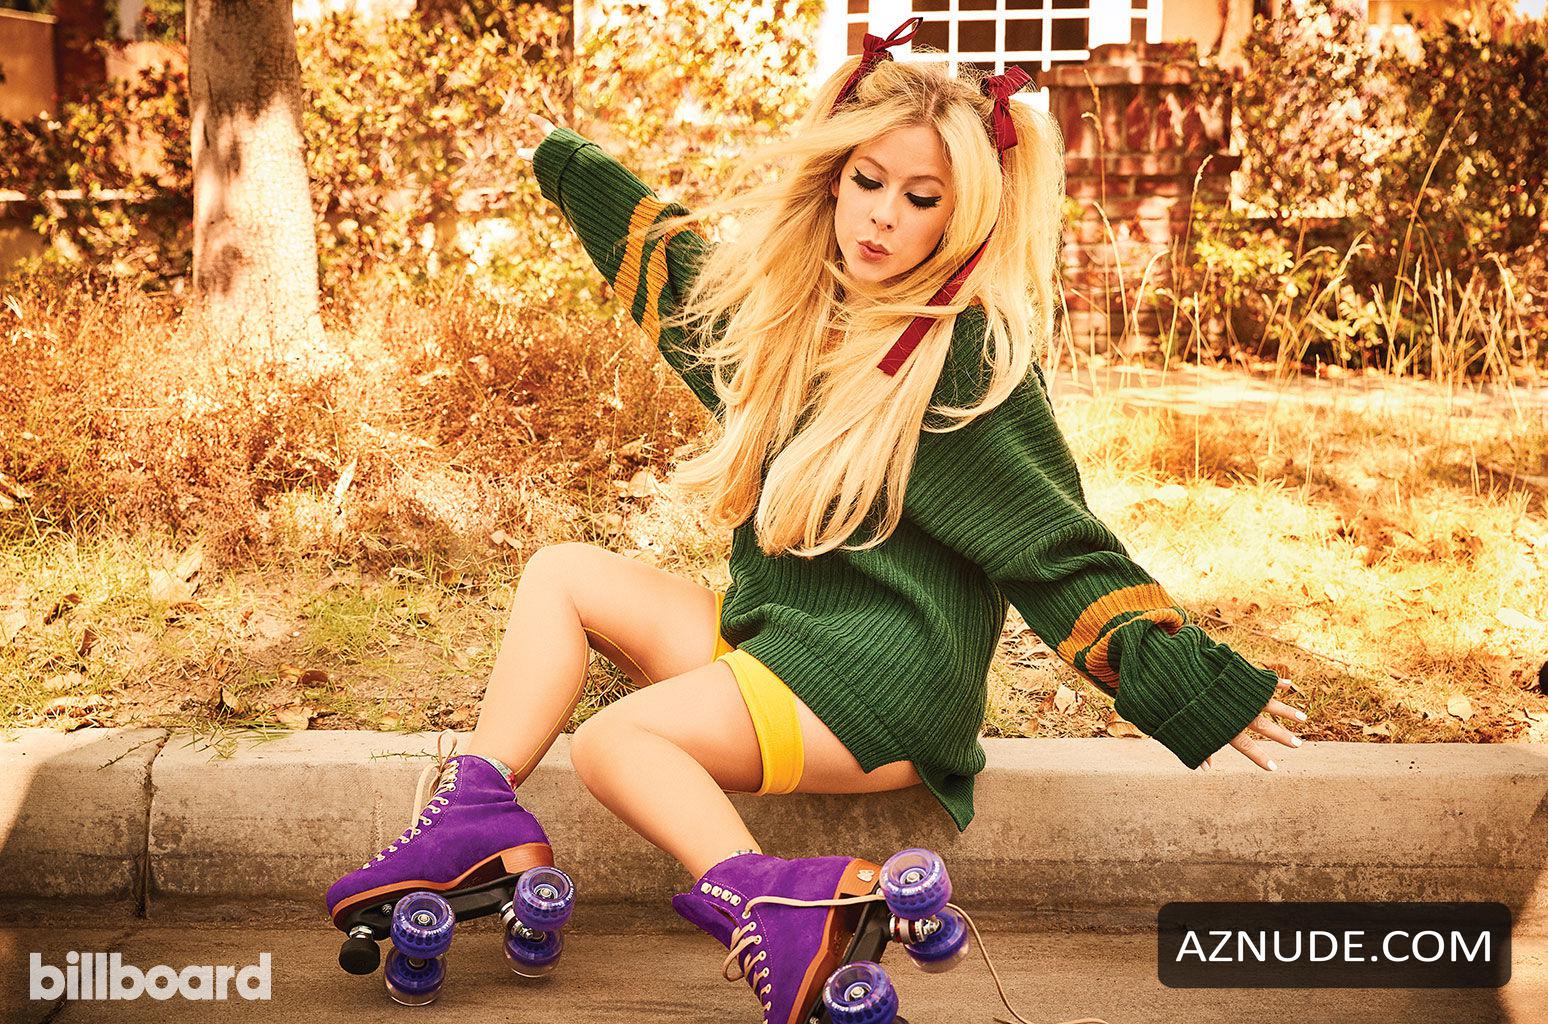 Avril Lavigne Sexy Singer Photos Aznude